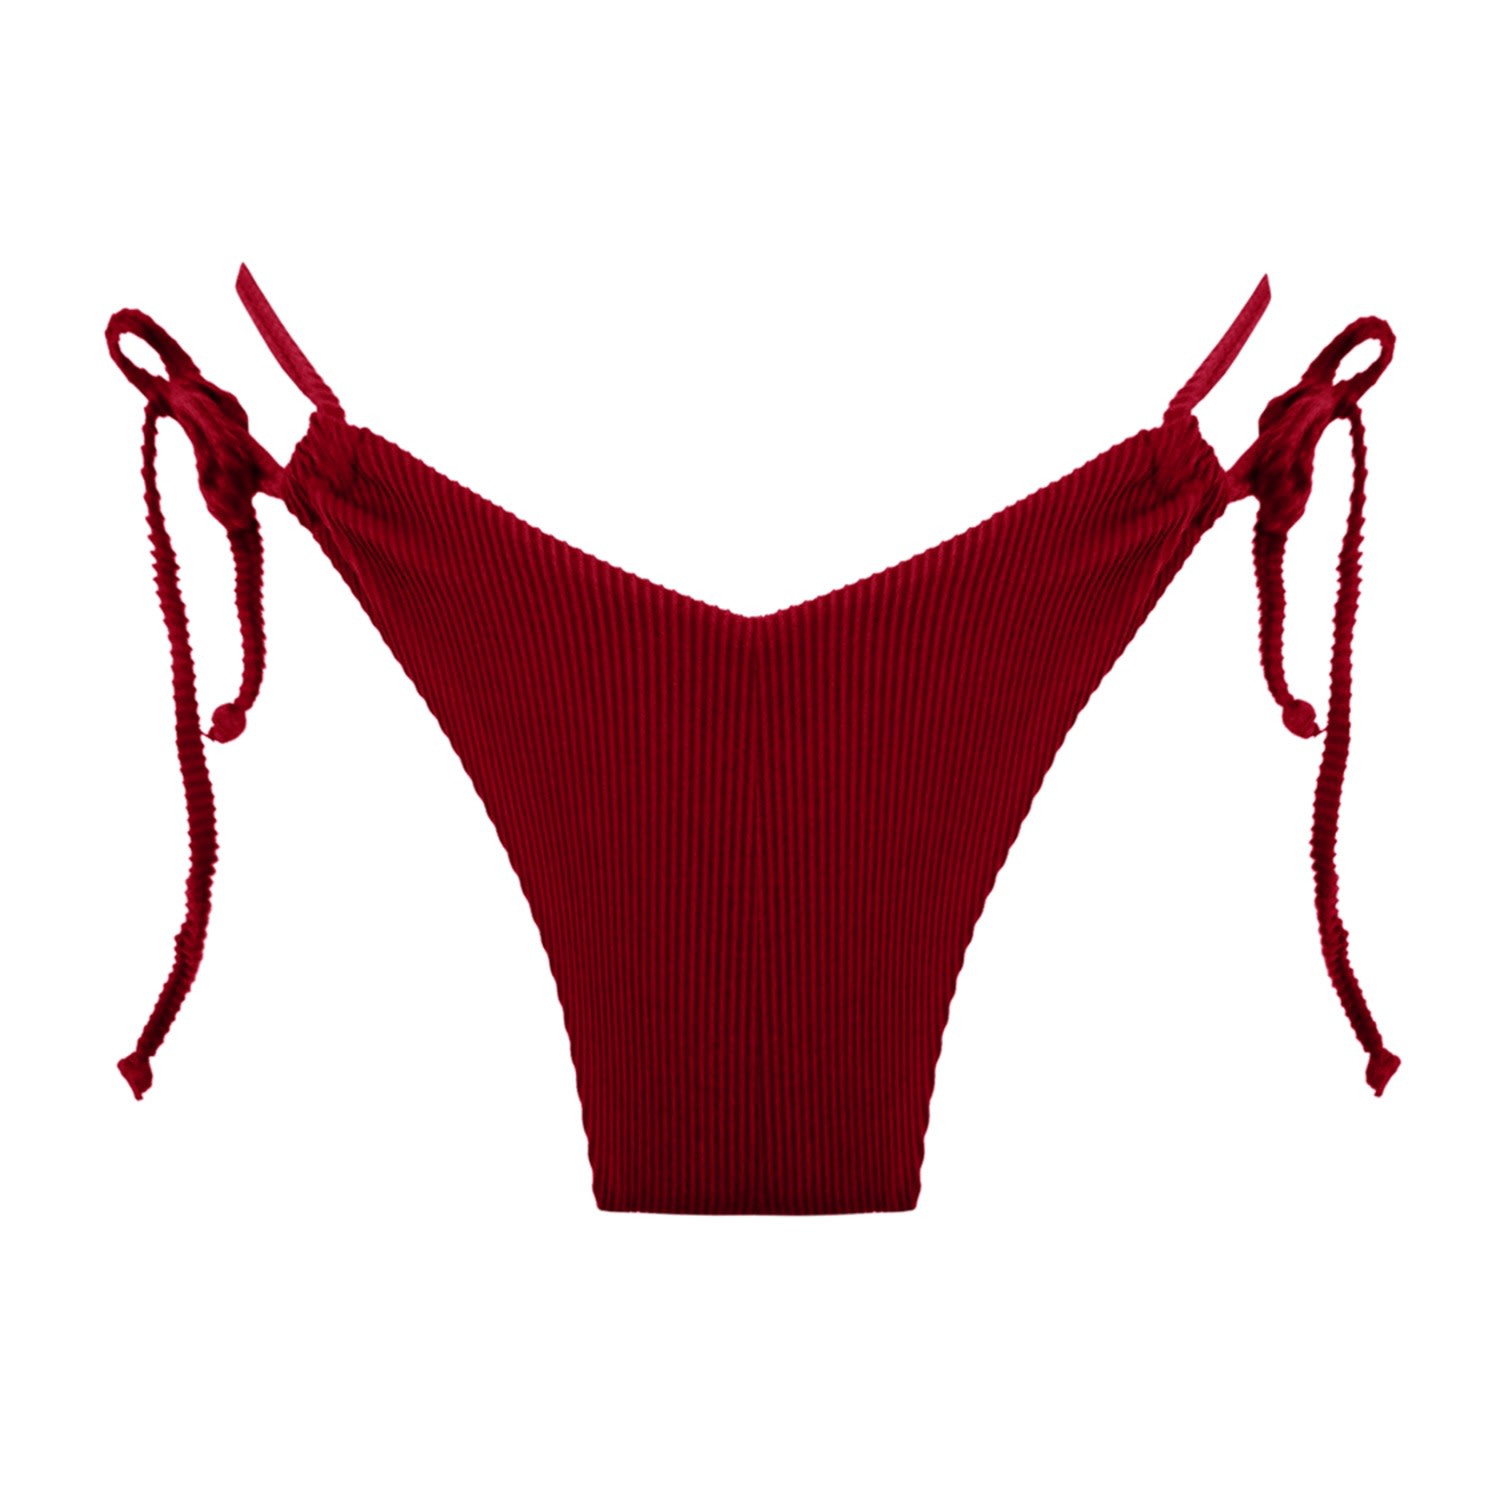 Women's Portofino Strappy Bikini Bottom - Red Small LEONESSA Lingerie